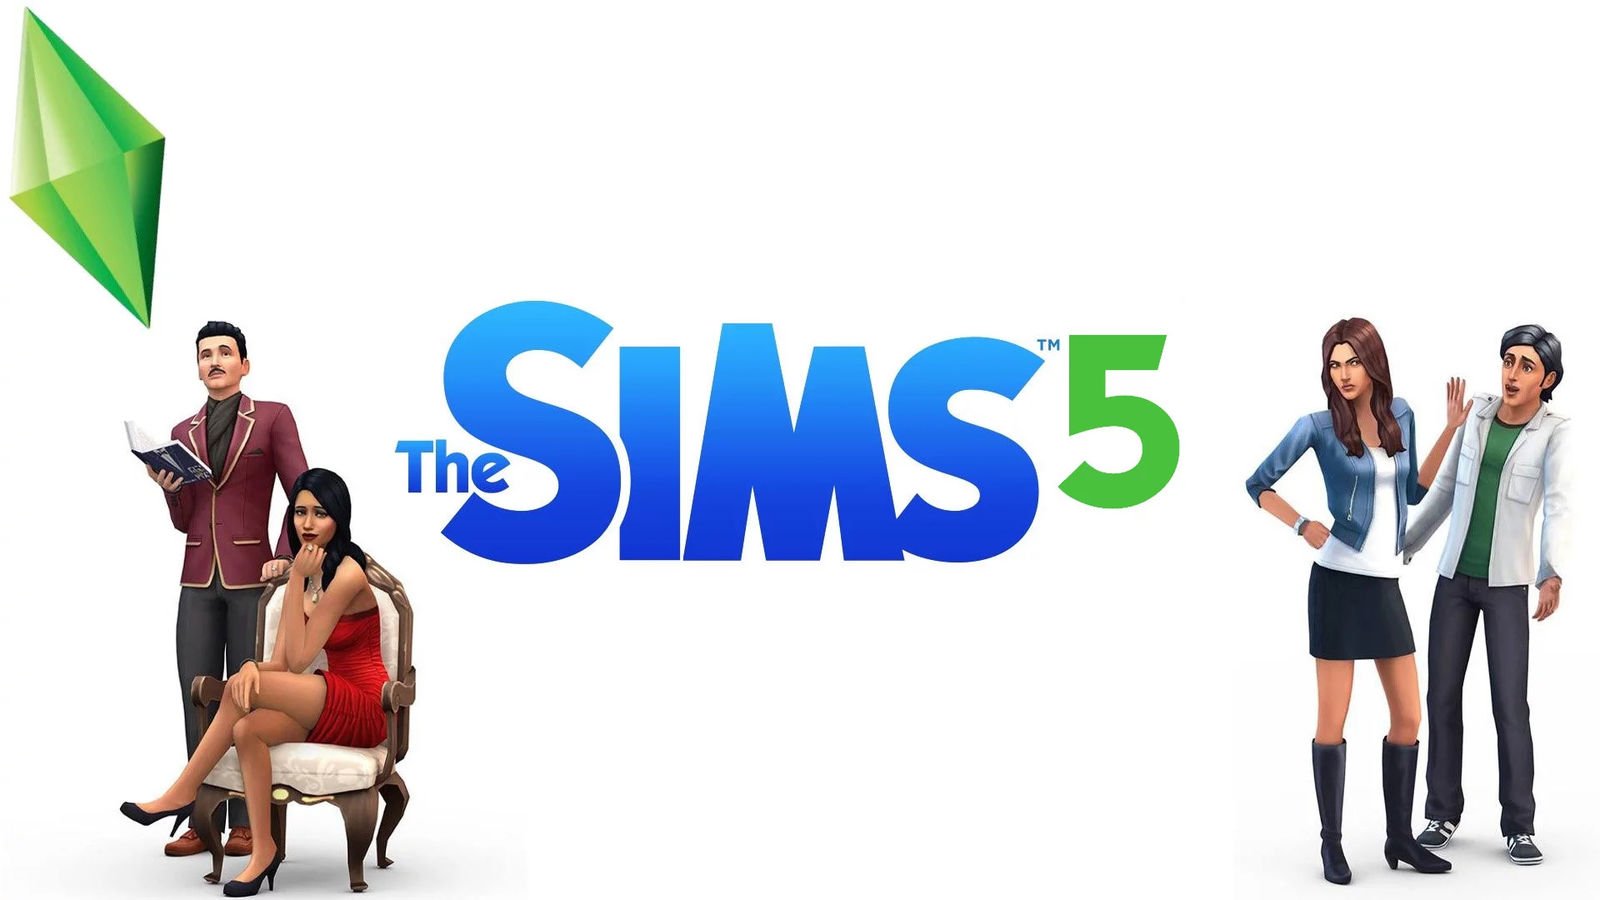 Sims 5 ücretsiz olacak!